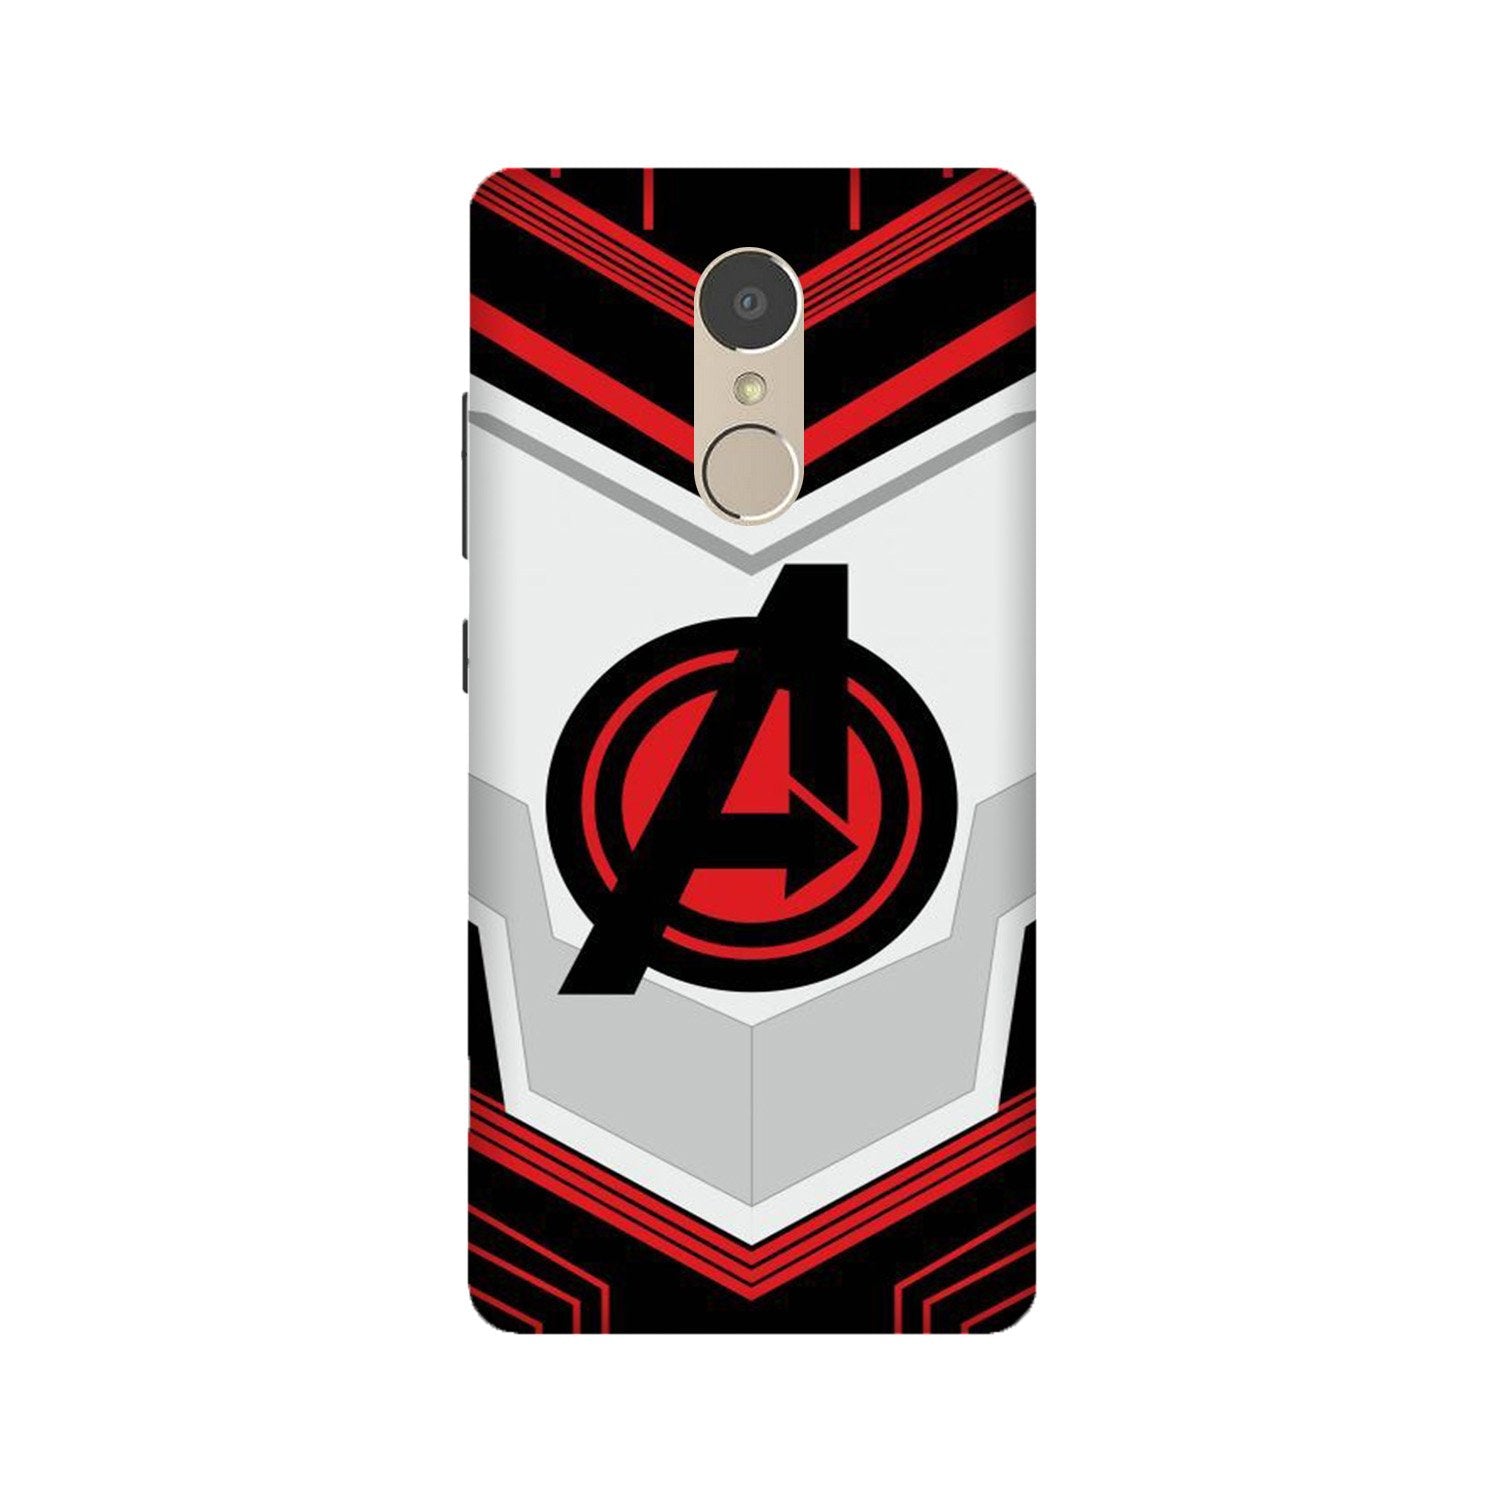 Avengers2 Case for Lenovo K6 Note (Design No. 255)